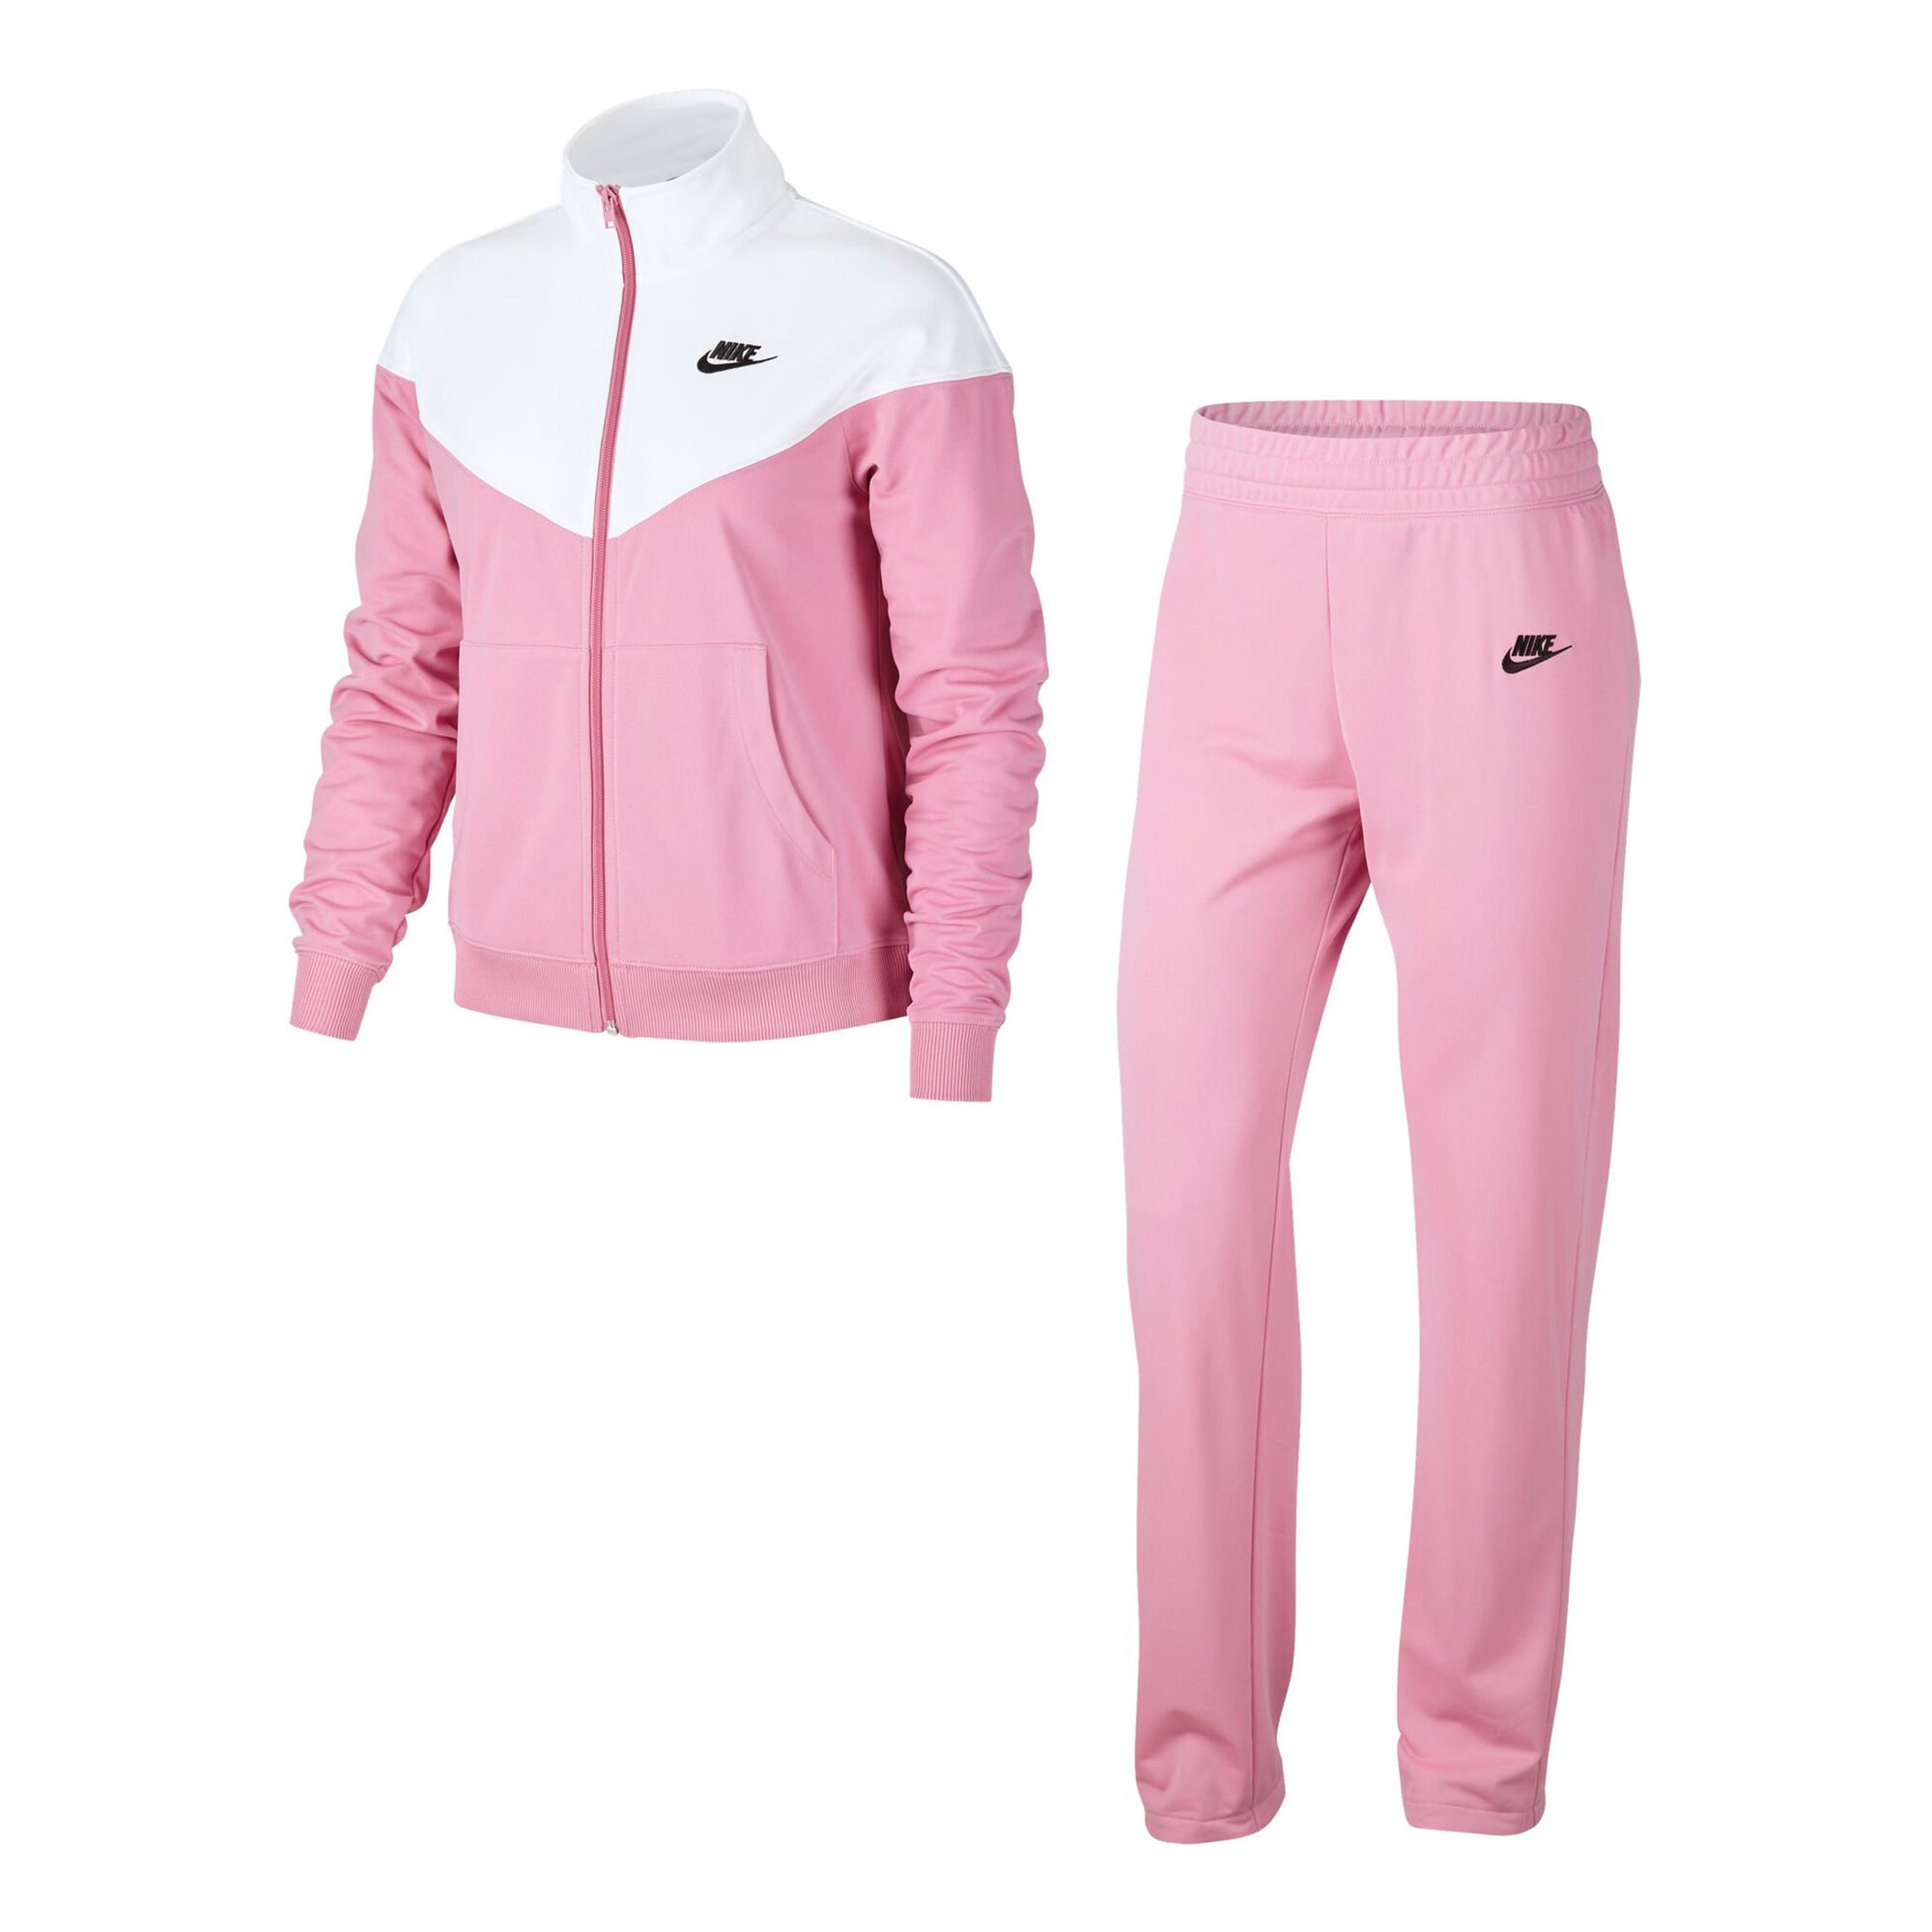 Buy Nike Sportswear Tracksuit Women Pink, White online | Tennis Point UK